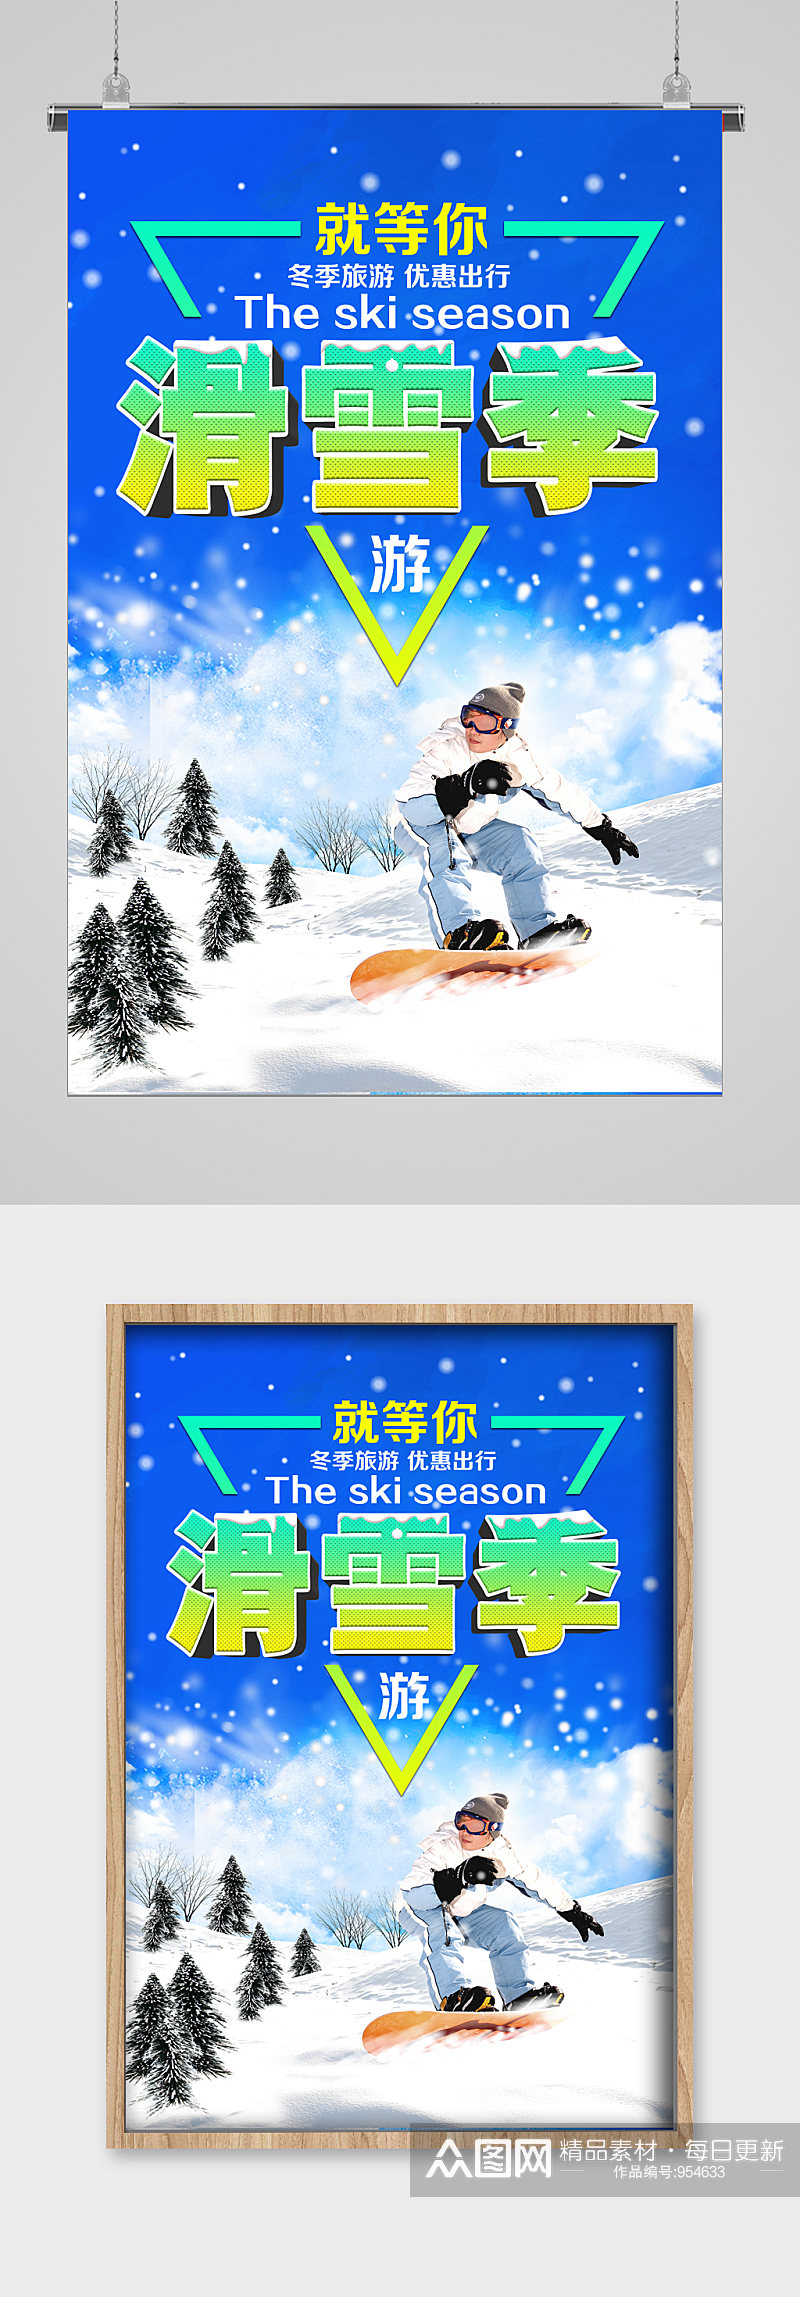 冬季滑雪三角宣传海报素材